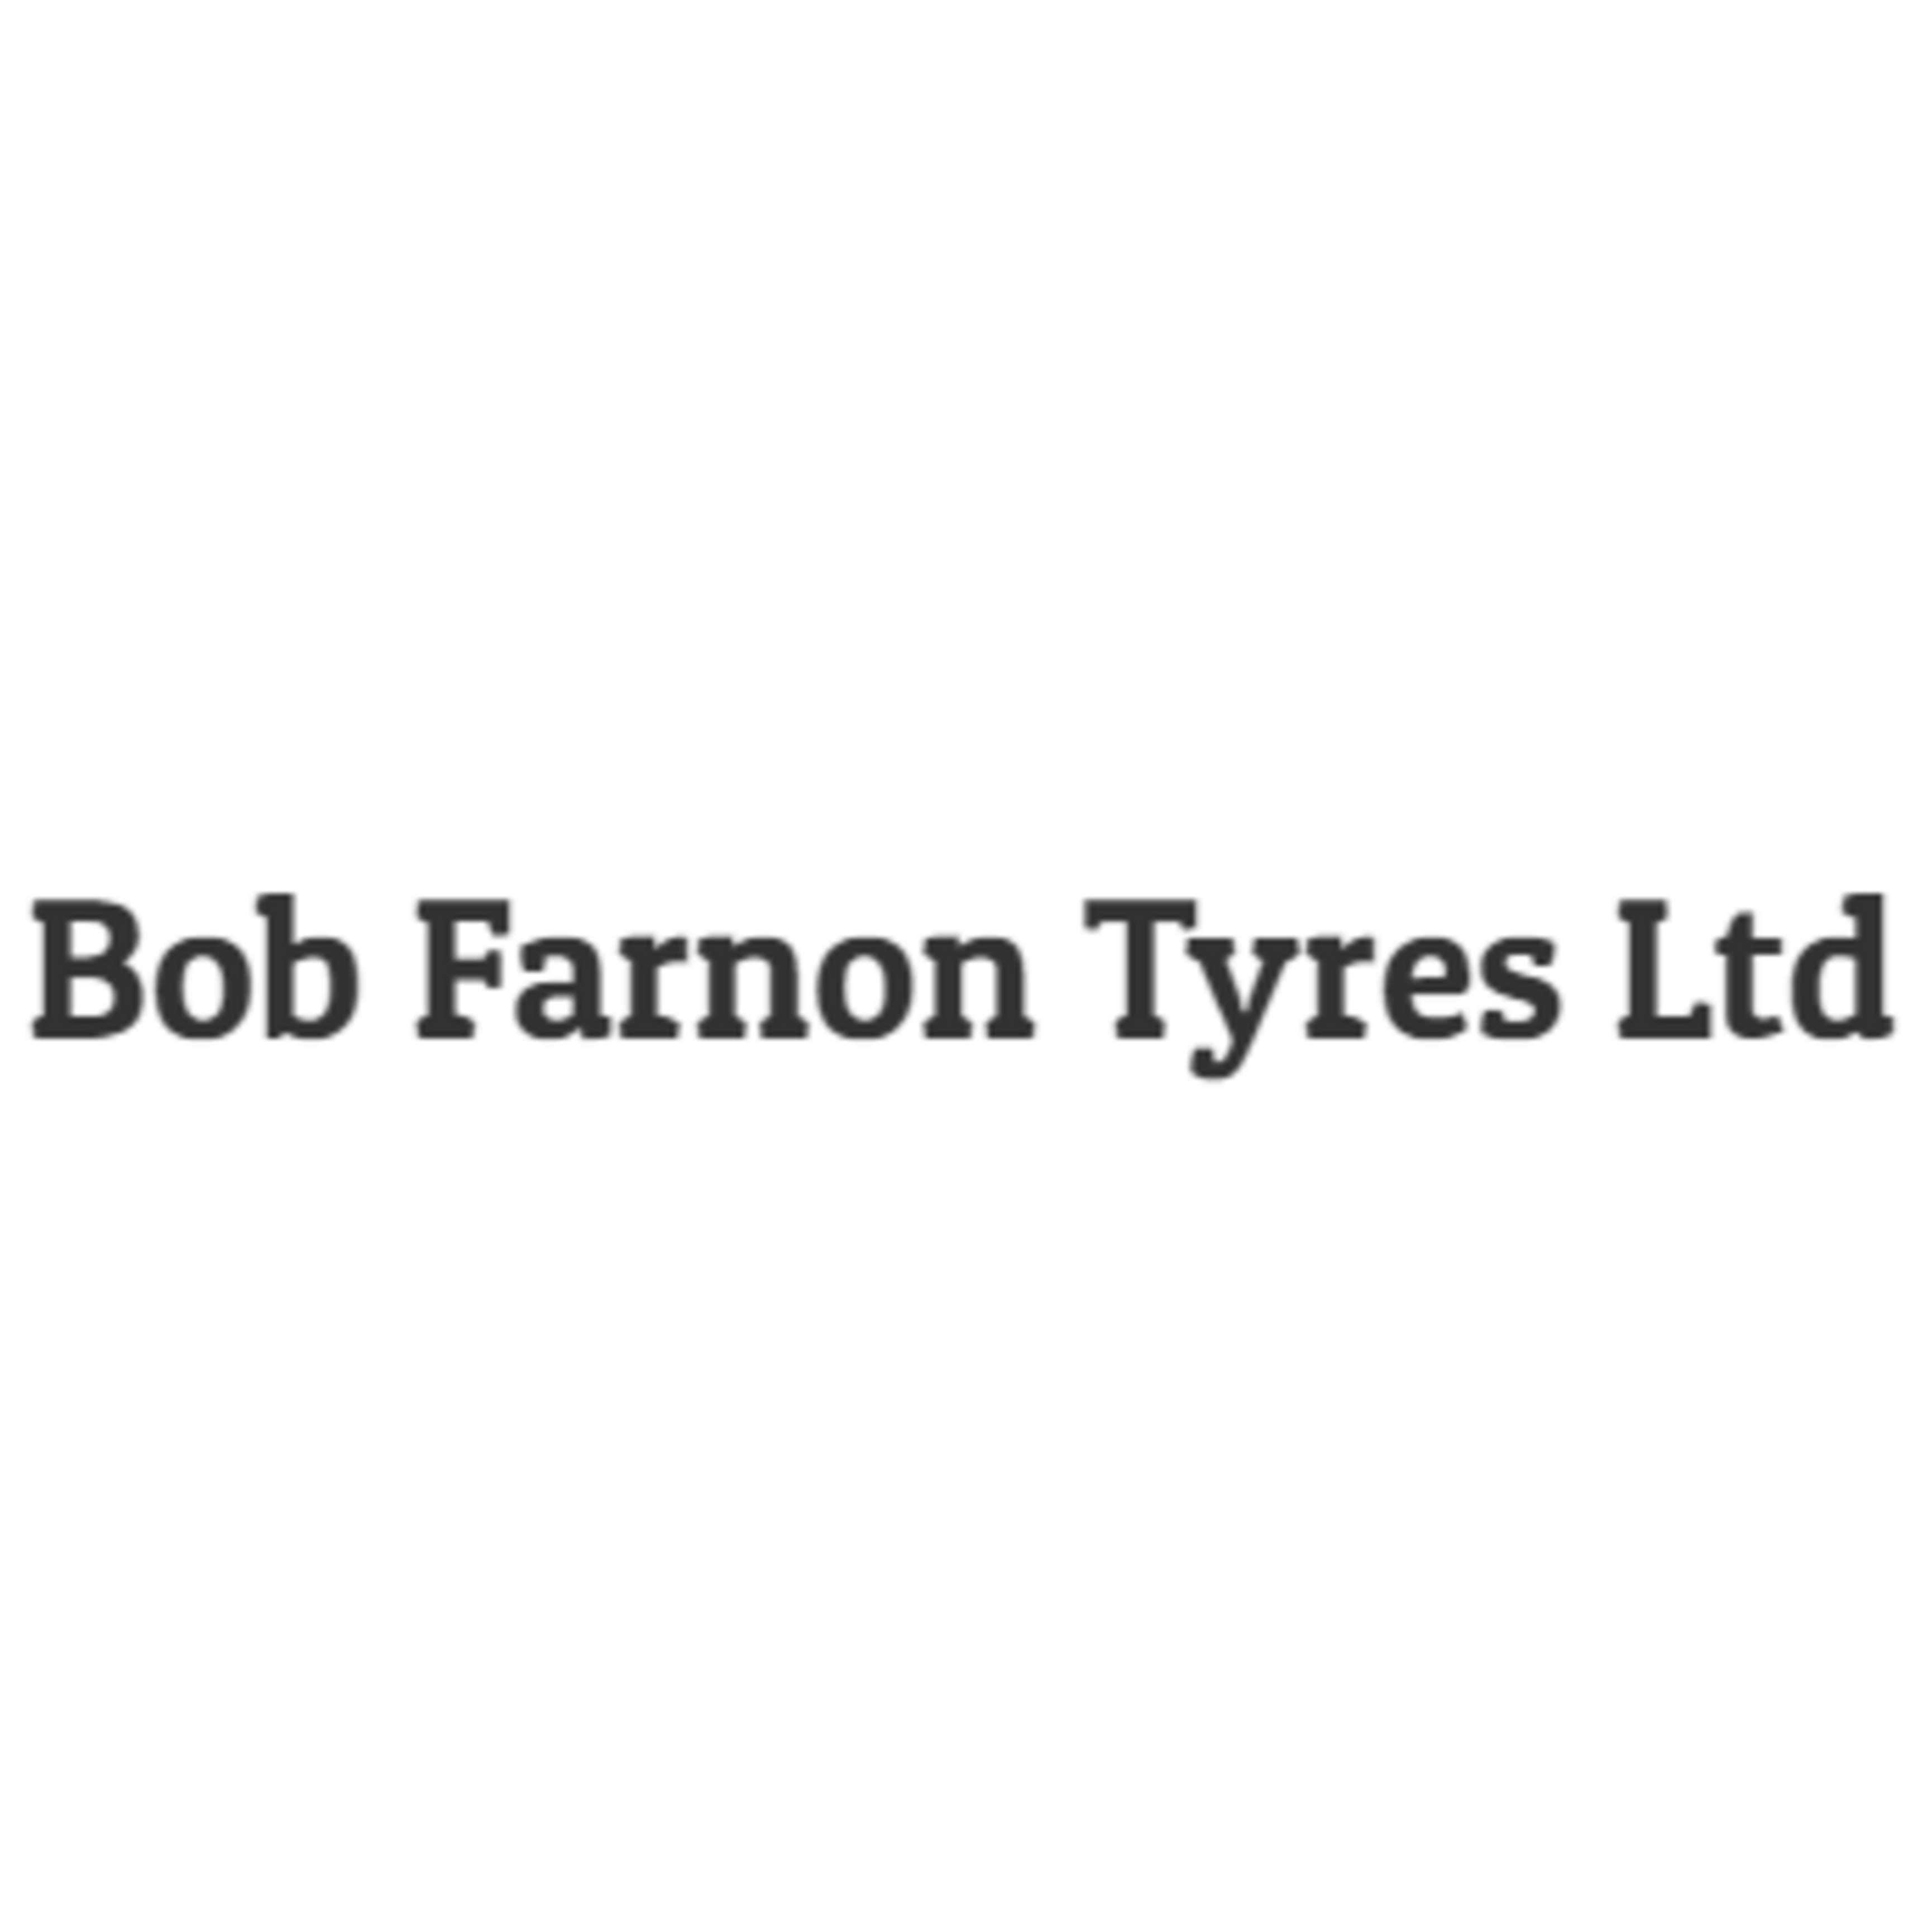 Bob Farnon Tyres LTD - Knutsford, Cheshire WA16 8PR - 01565 653757 | ShowMeLocal.com